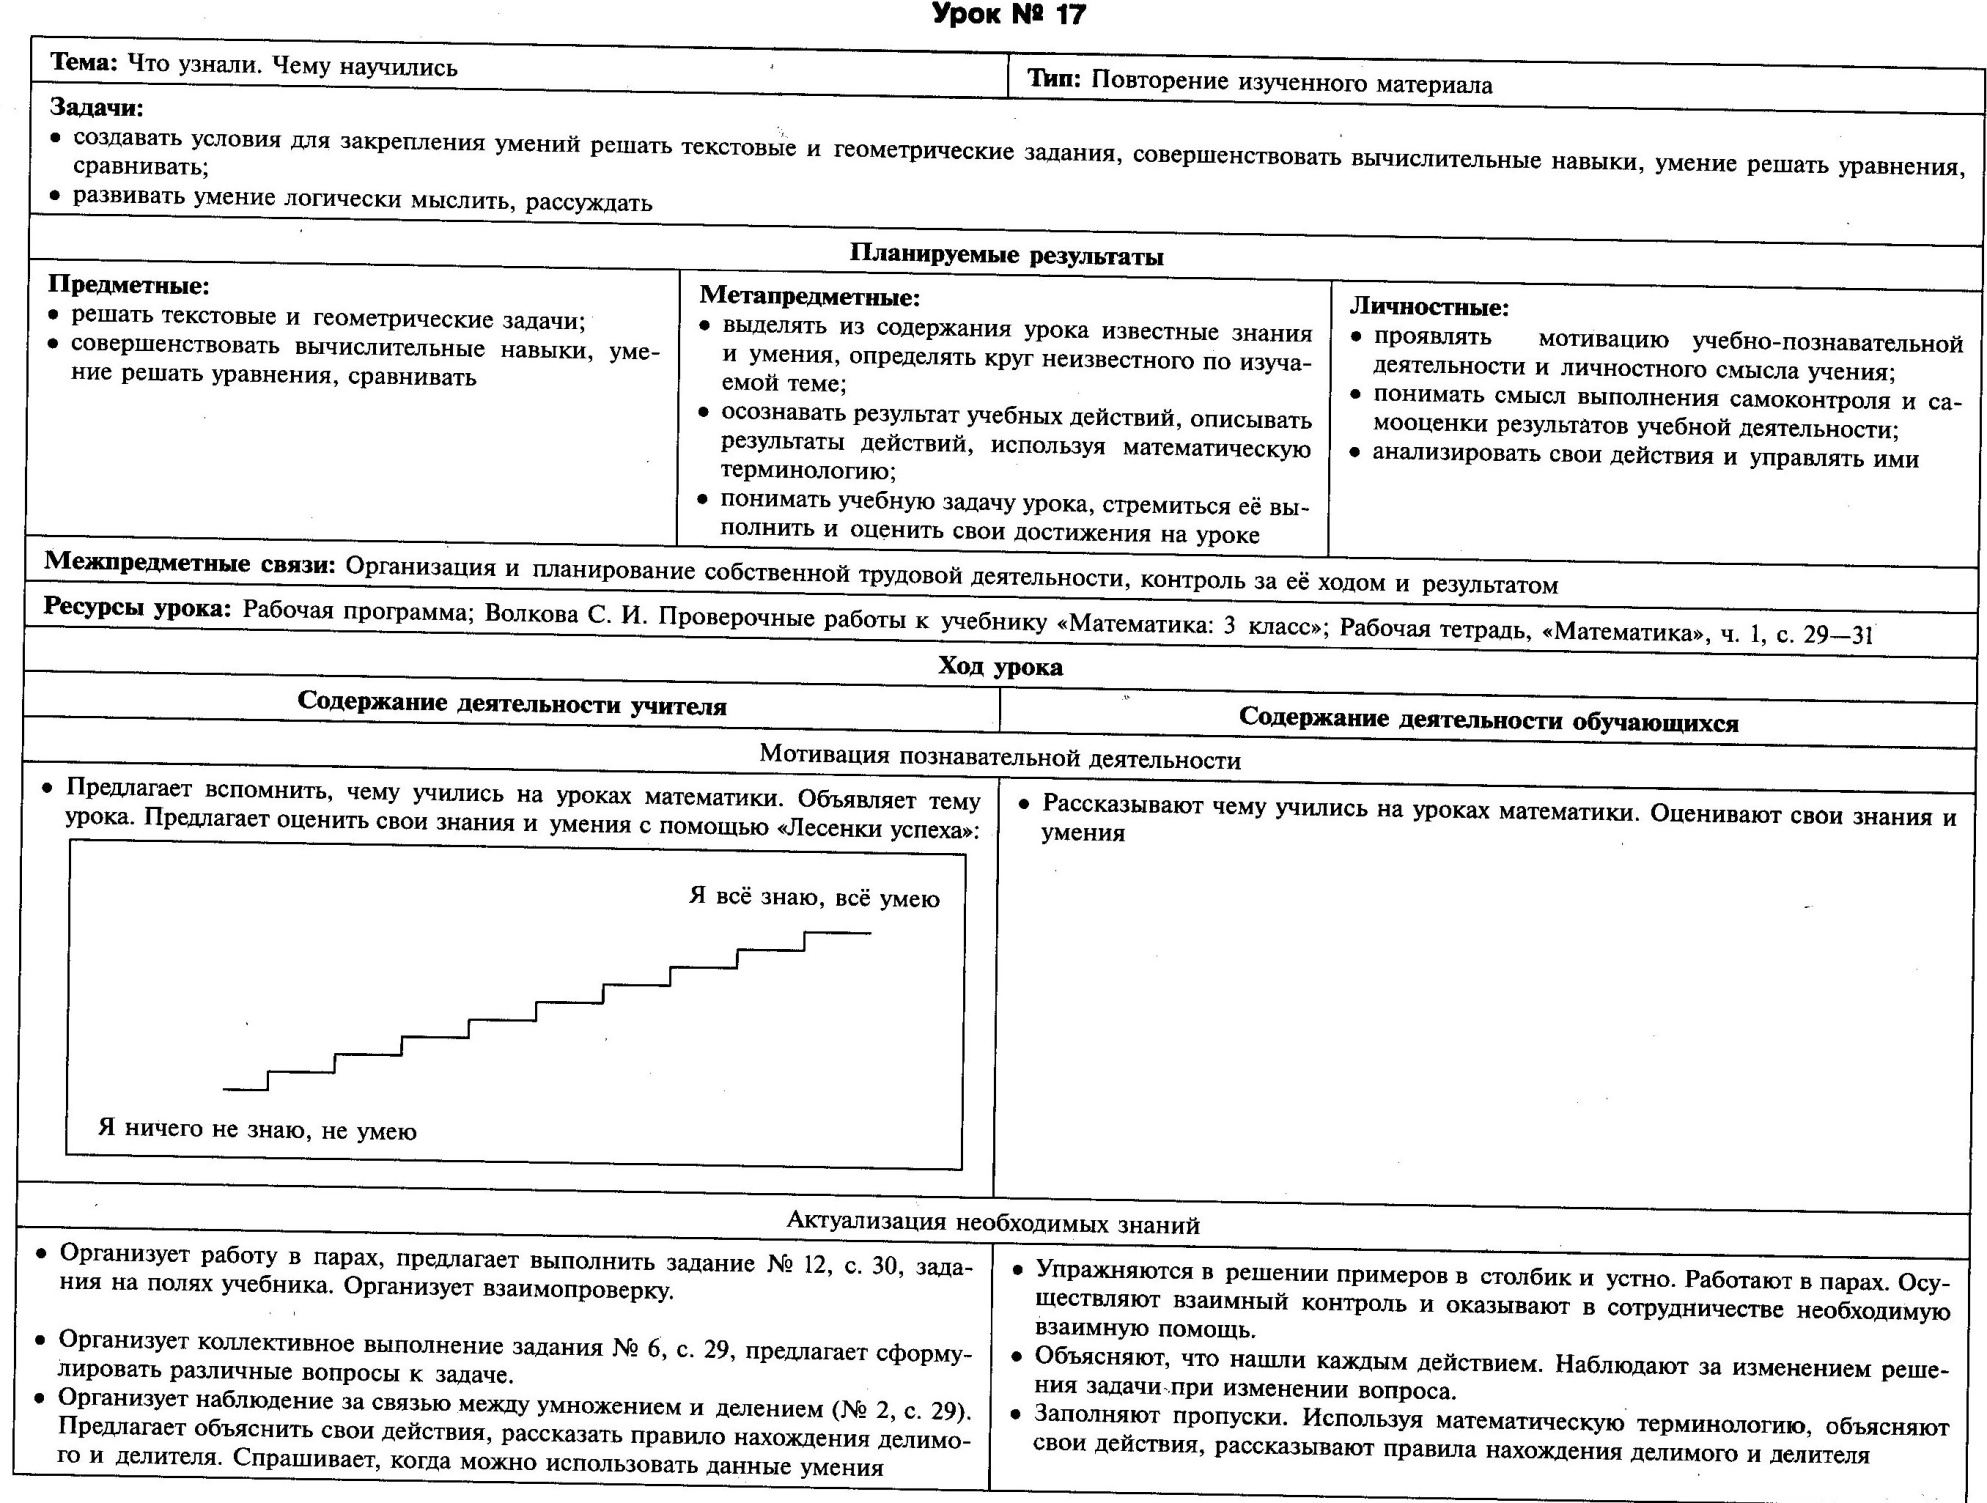 Технологические карты уроков математики в 3 классе (УМК Школа России)